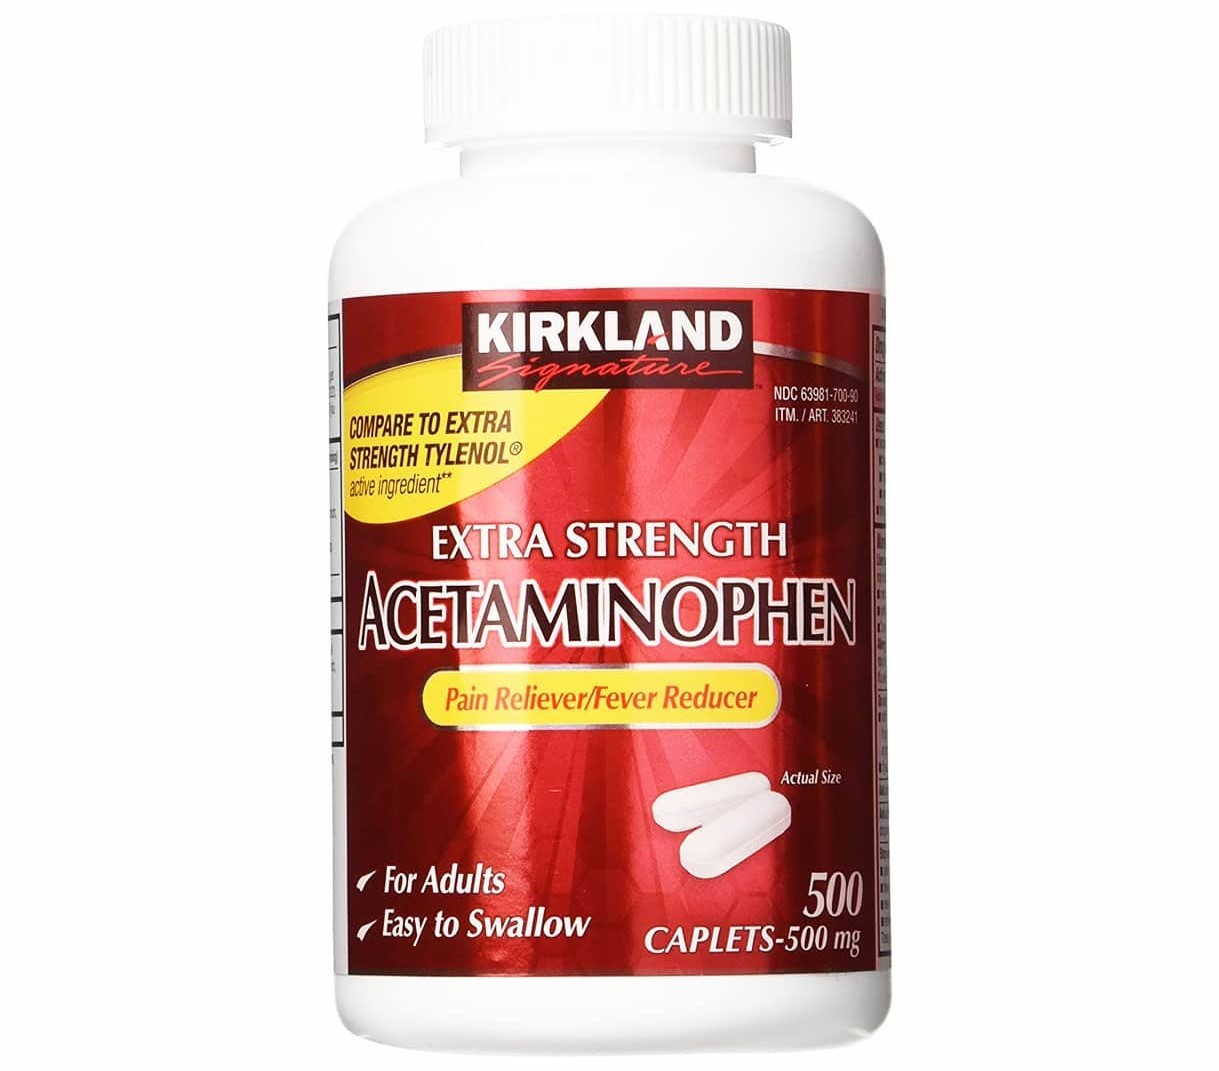 Kirkland Extra Strength Acetaminophen 500mg là thuốc giúp giảm đau, hạ sốt